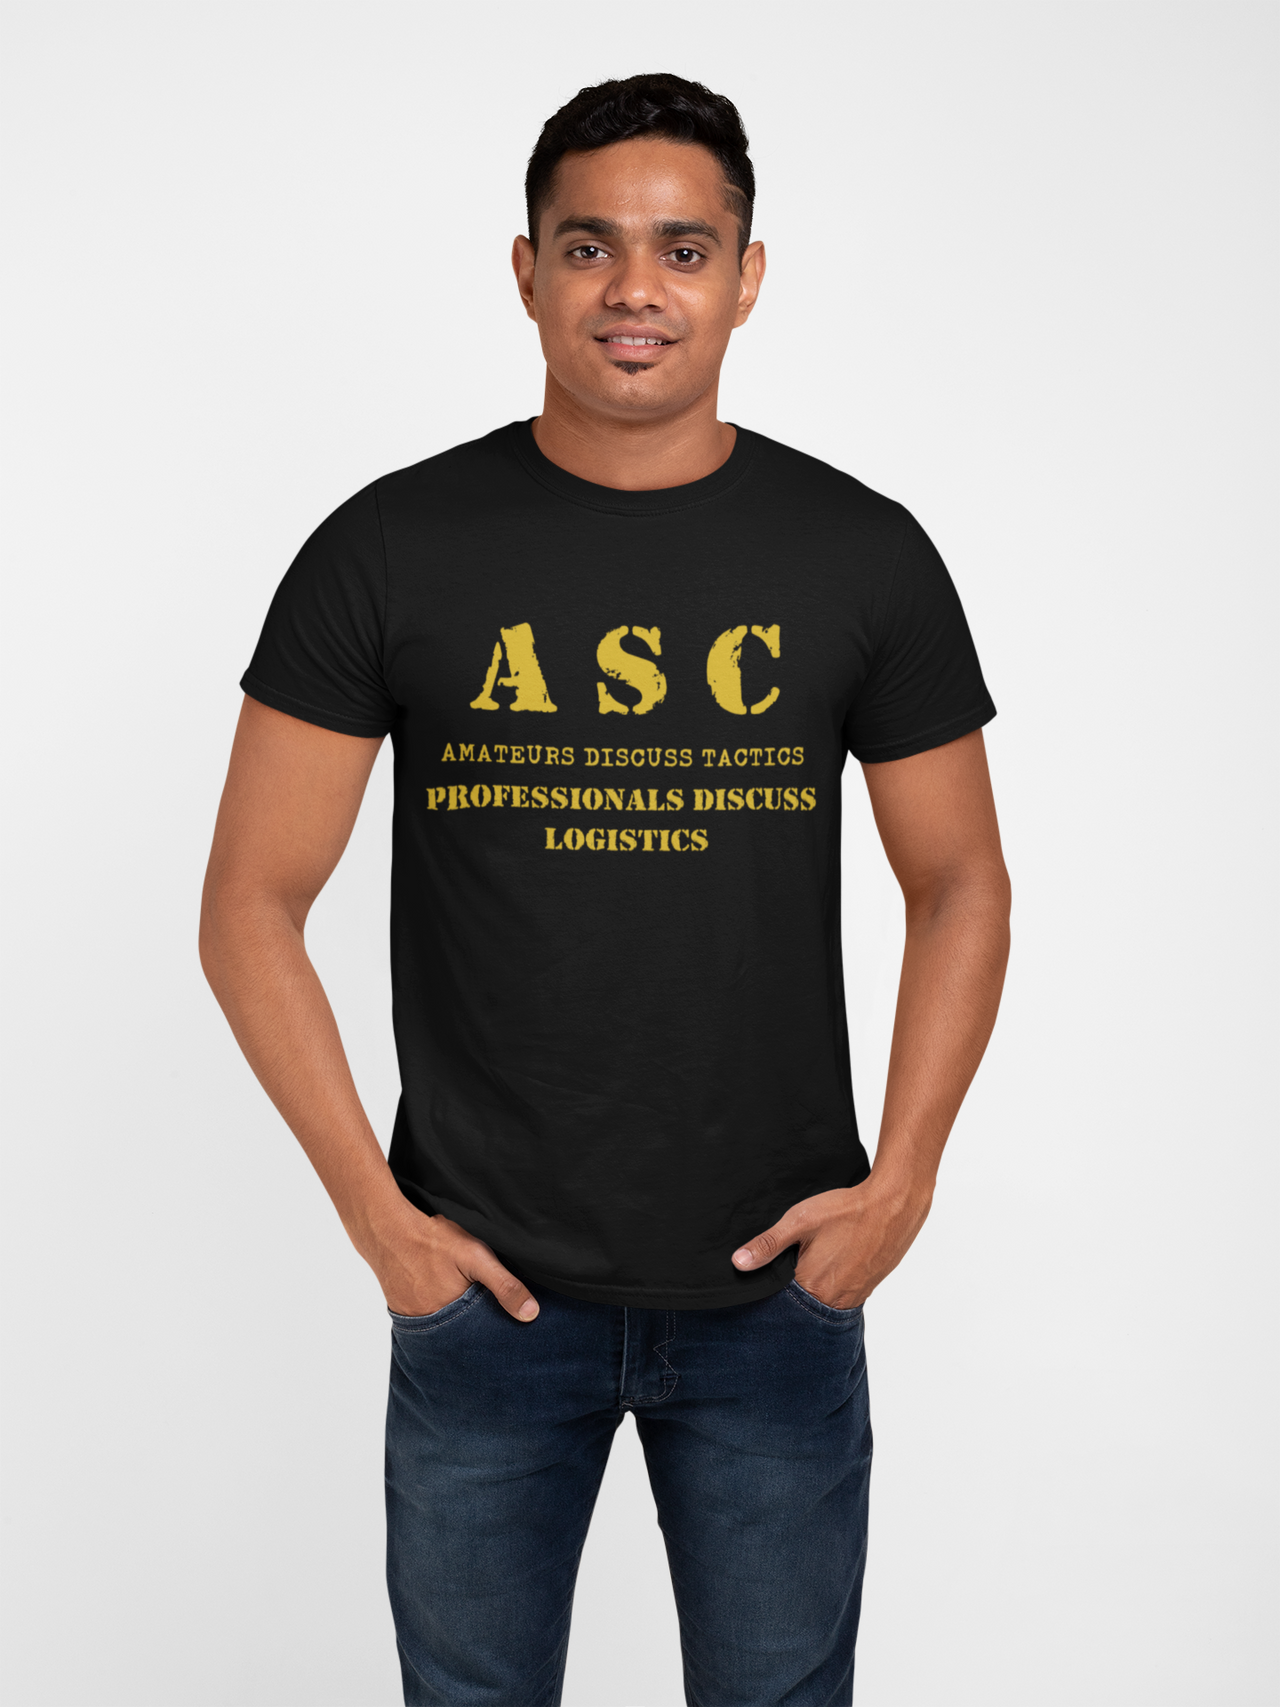 ASC T-shirt - ASC, Amateurs Discuss Tactics, Professionals Discuss Logistics (Men)